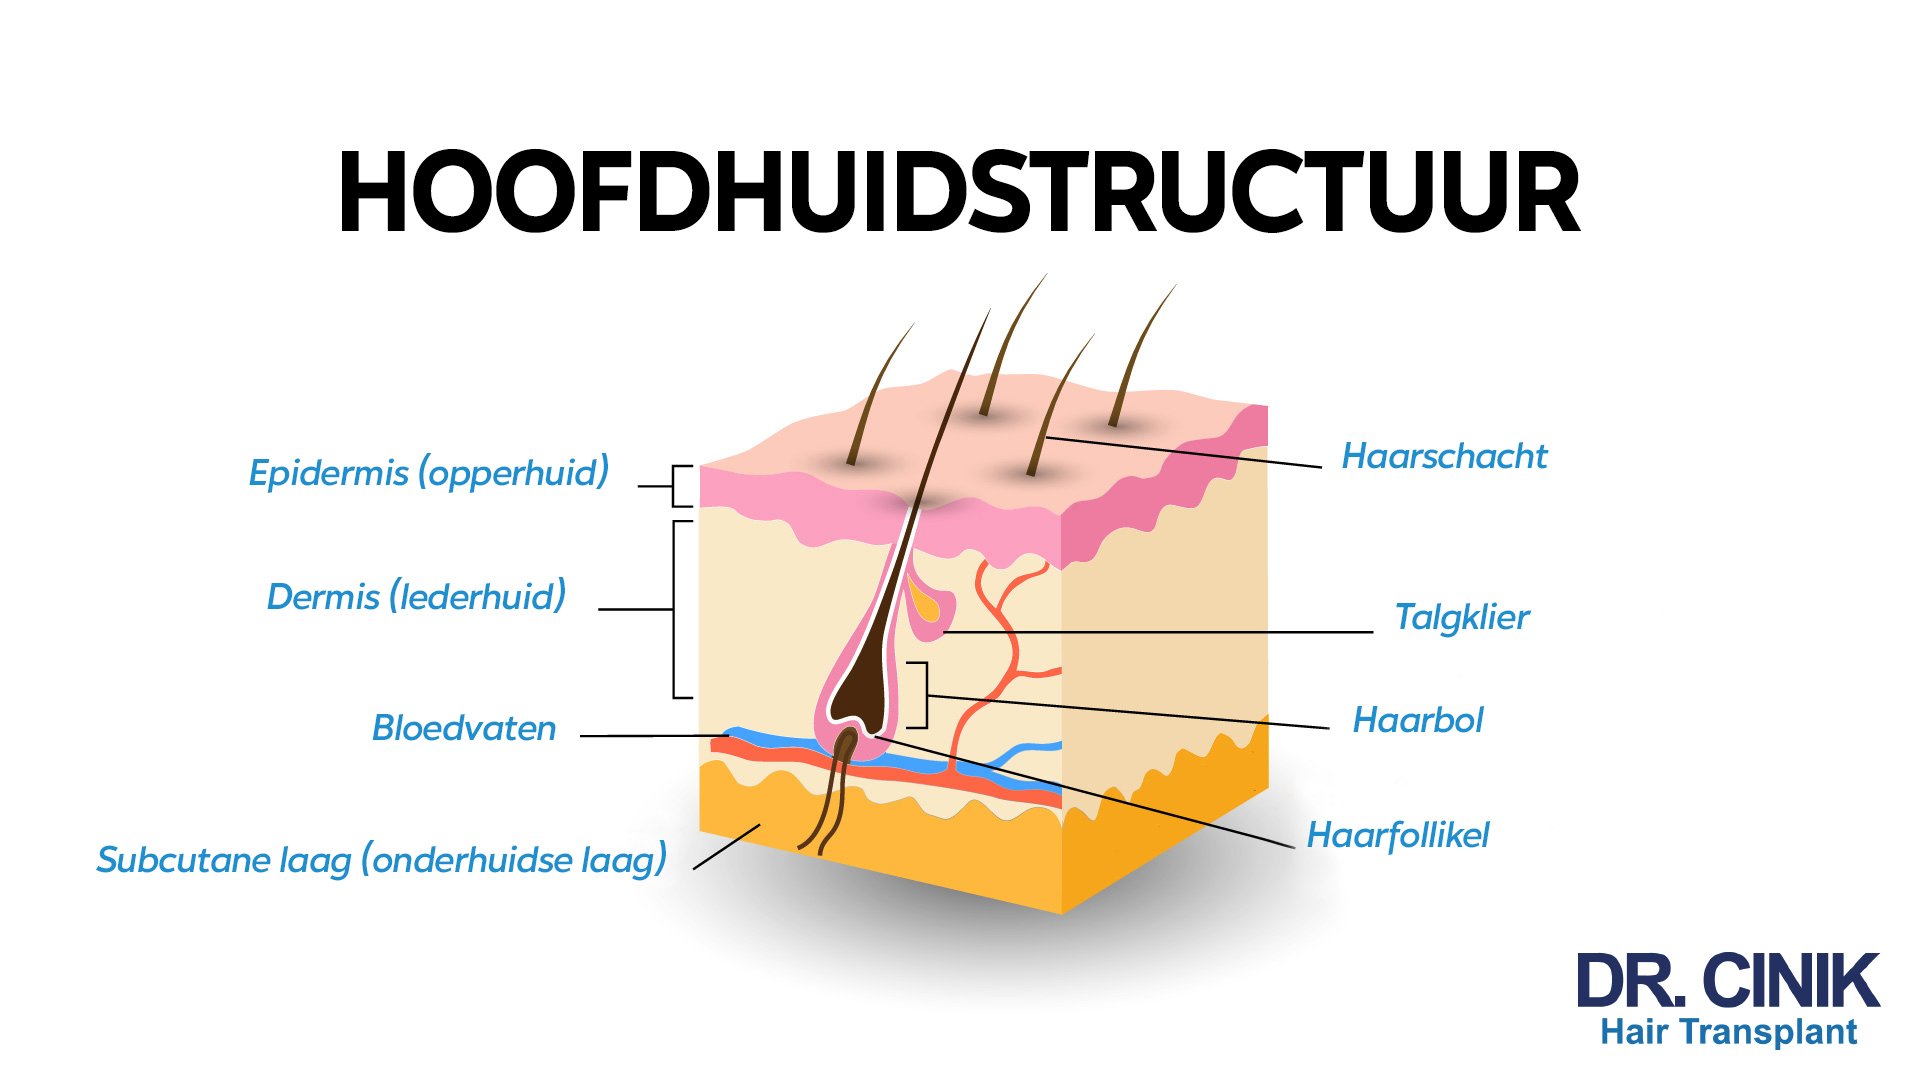 Een schematische afbeelding met de titel 'HOOFDHUIDSTRUCTUUR' bovenaan, die de anatomie van de menselijke hoofdhuid en haarfollikel in het Nederlands labelt. De afbeelding toont een dwarsdoorsnede van de hoofdhuid met verschillende lagen en componenten. Van buiten naar binnen zijn de volgende delen aangeduid: 'Epidermis (opperhuid)', 'Dermis (lederhuid)', 'Subcutane laag (onderhuidse laag)', en 'Bloedvaten'. De haarstructuur wordt aangeduid met 'Haarschacht', 'Talgklier', 'Haarbol', en 'Haarfollikel'. Helemaal onderaan staat 'DR. CINK Hair Transplant'.